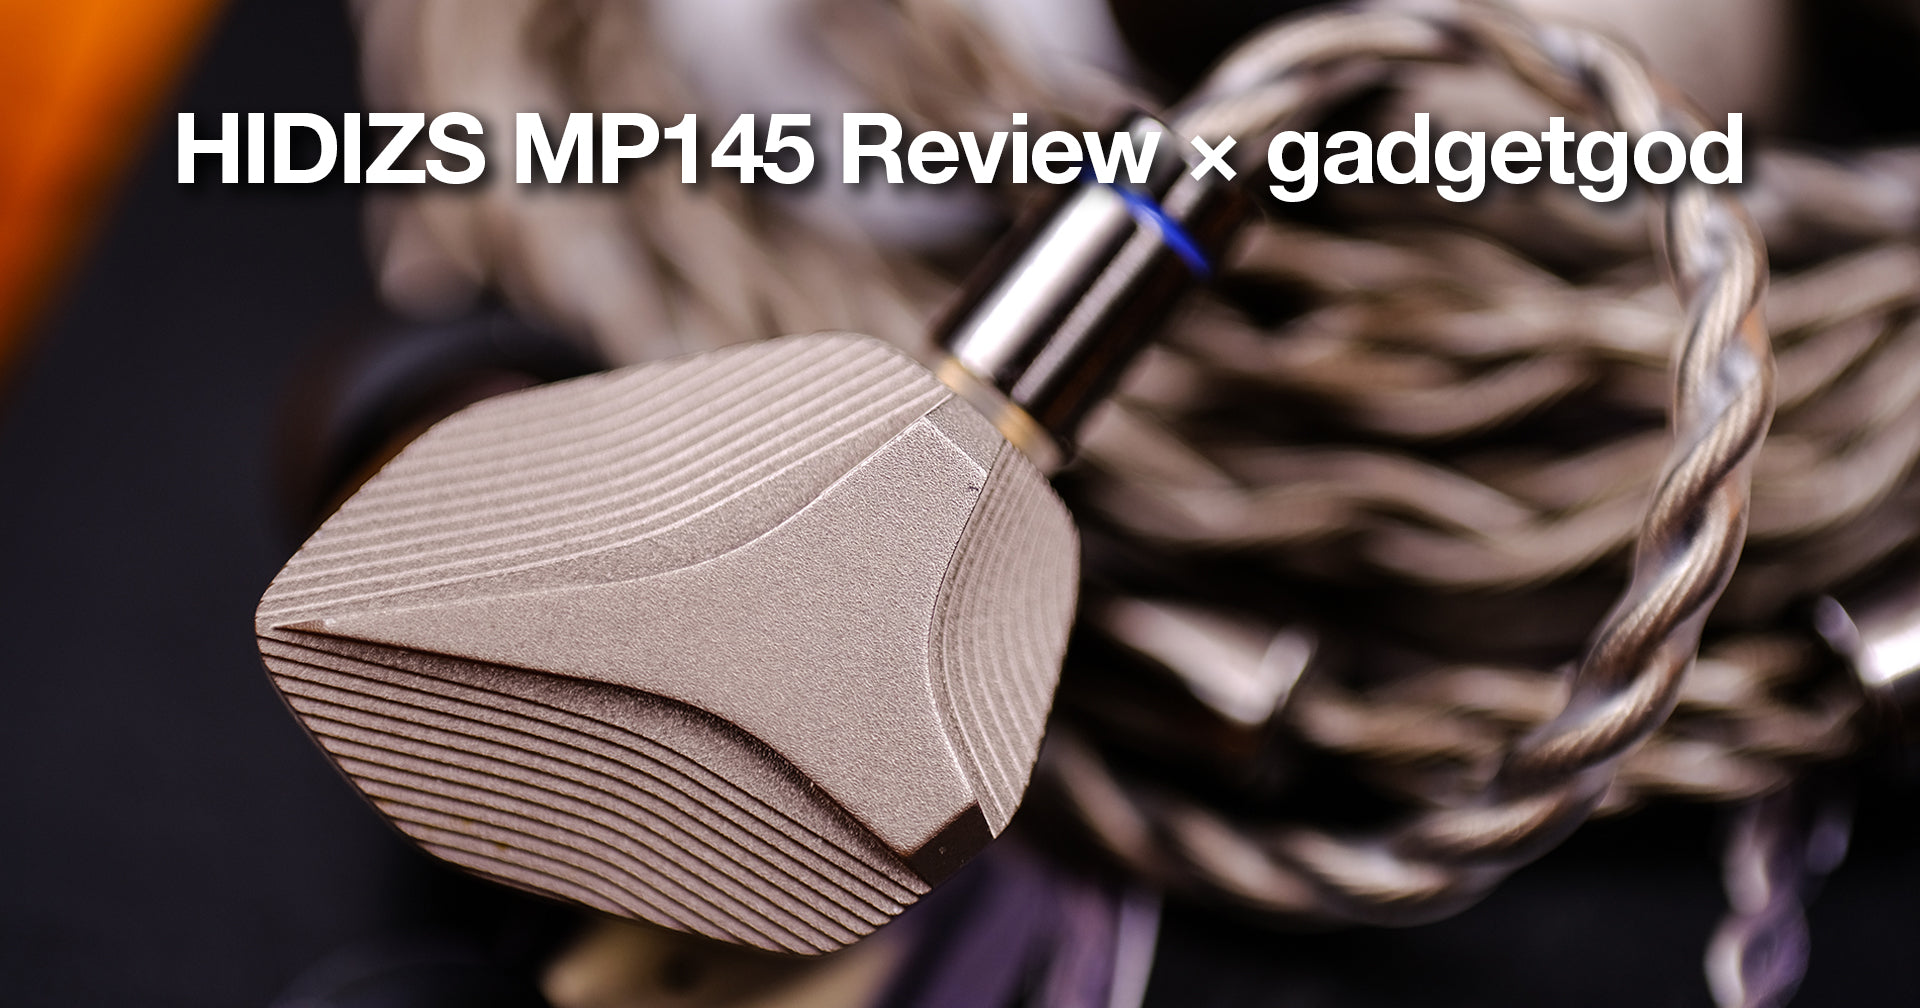 HIDIZS MP145 Review - gadgetgod